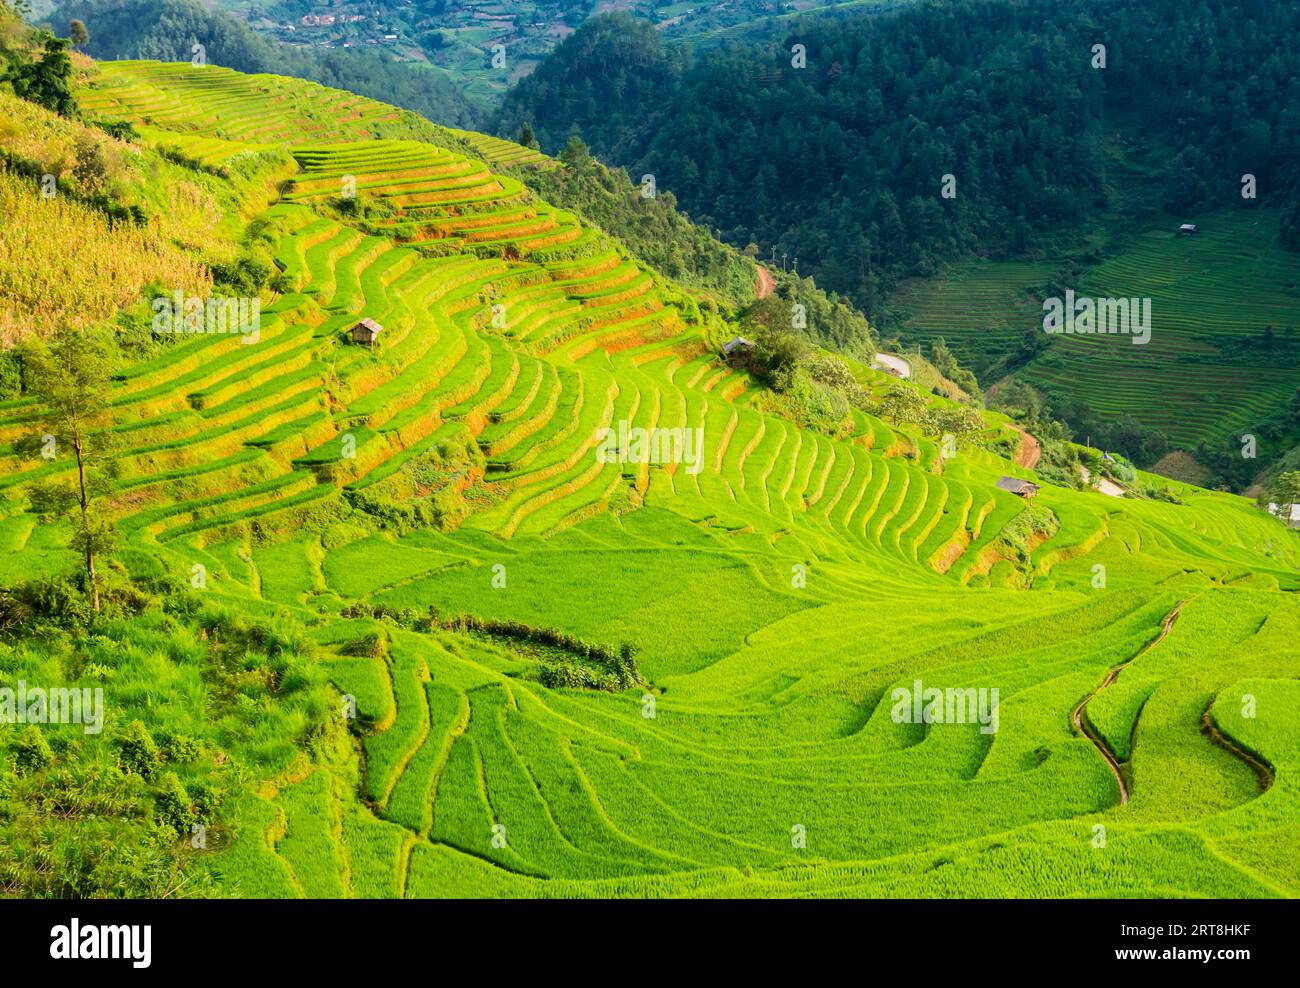 Paysage étonnant avec rizières en terrasses dans les montagnes de Mu Cang Chai, province de yen Bai, nord du Vietnam Banque D'Images